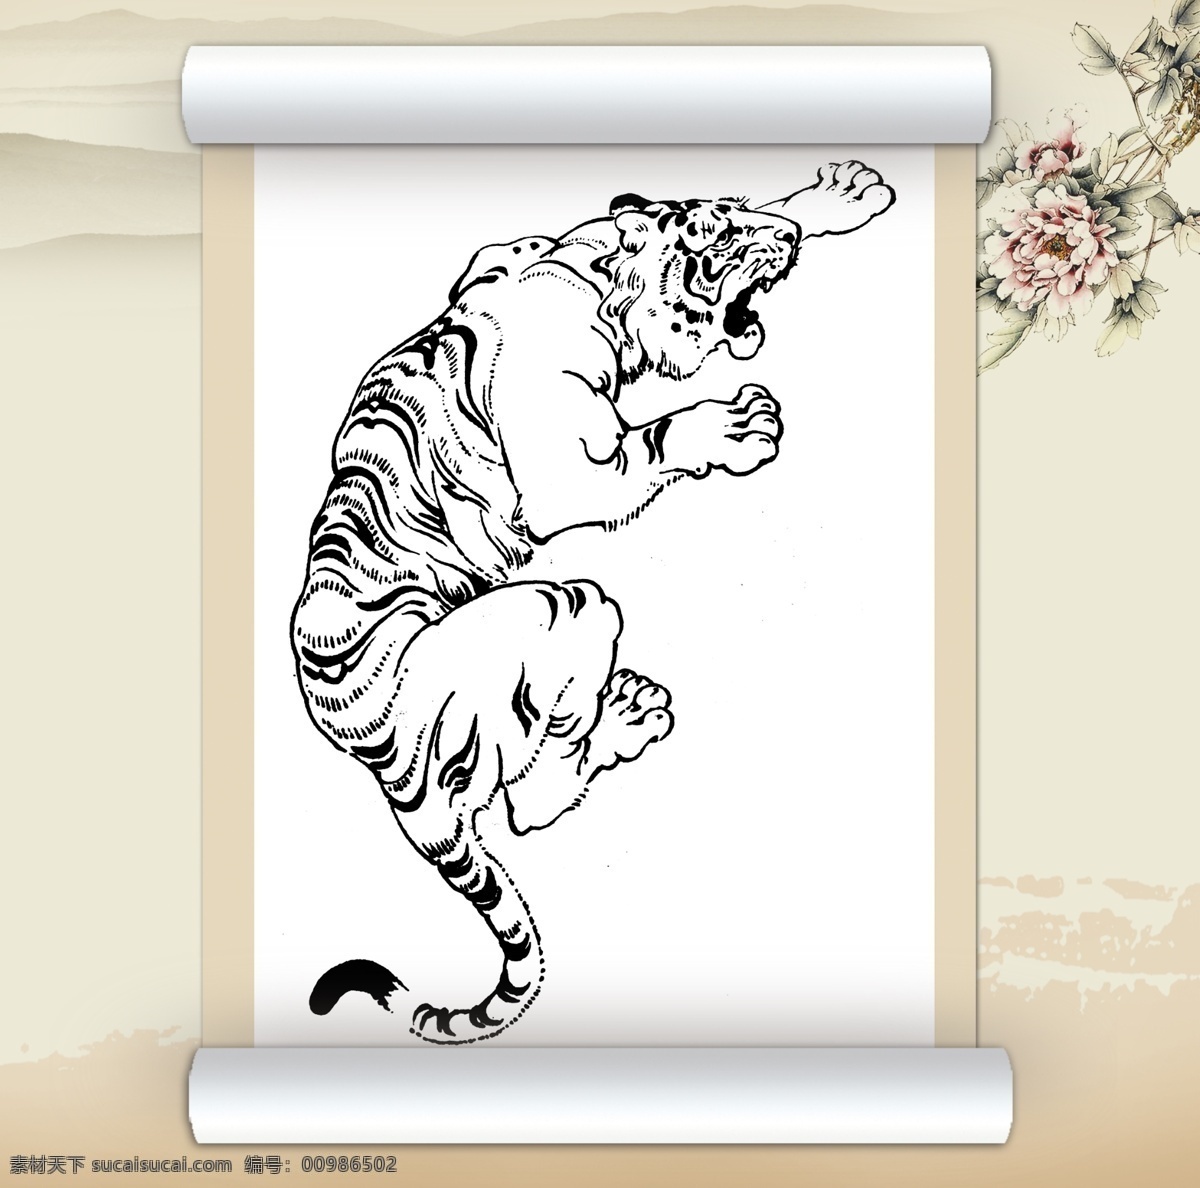 老虎 绘画 艺术 白描 动物 工笔 绘画书法 美术 设计图库 文化艺术 线描 装饰素材 室内装饰用图